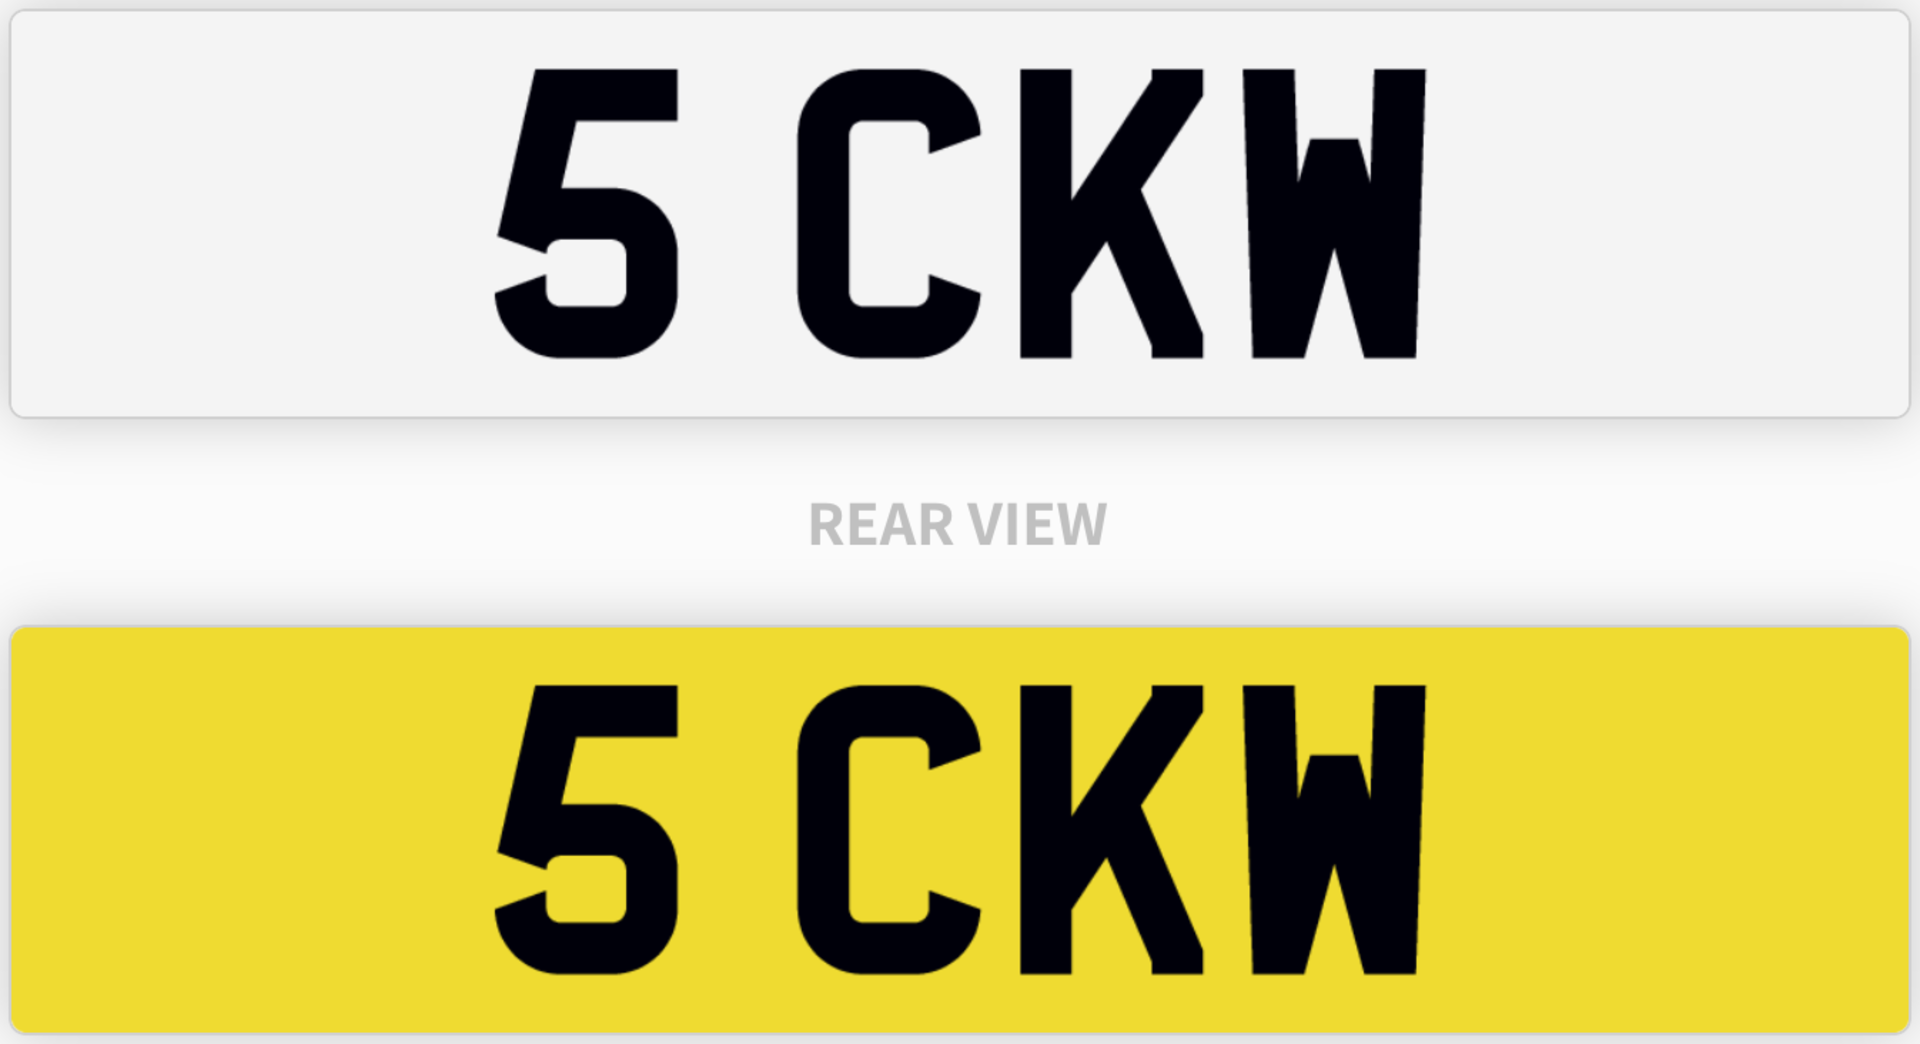 5 CKW number plate / car registration